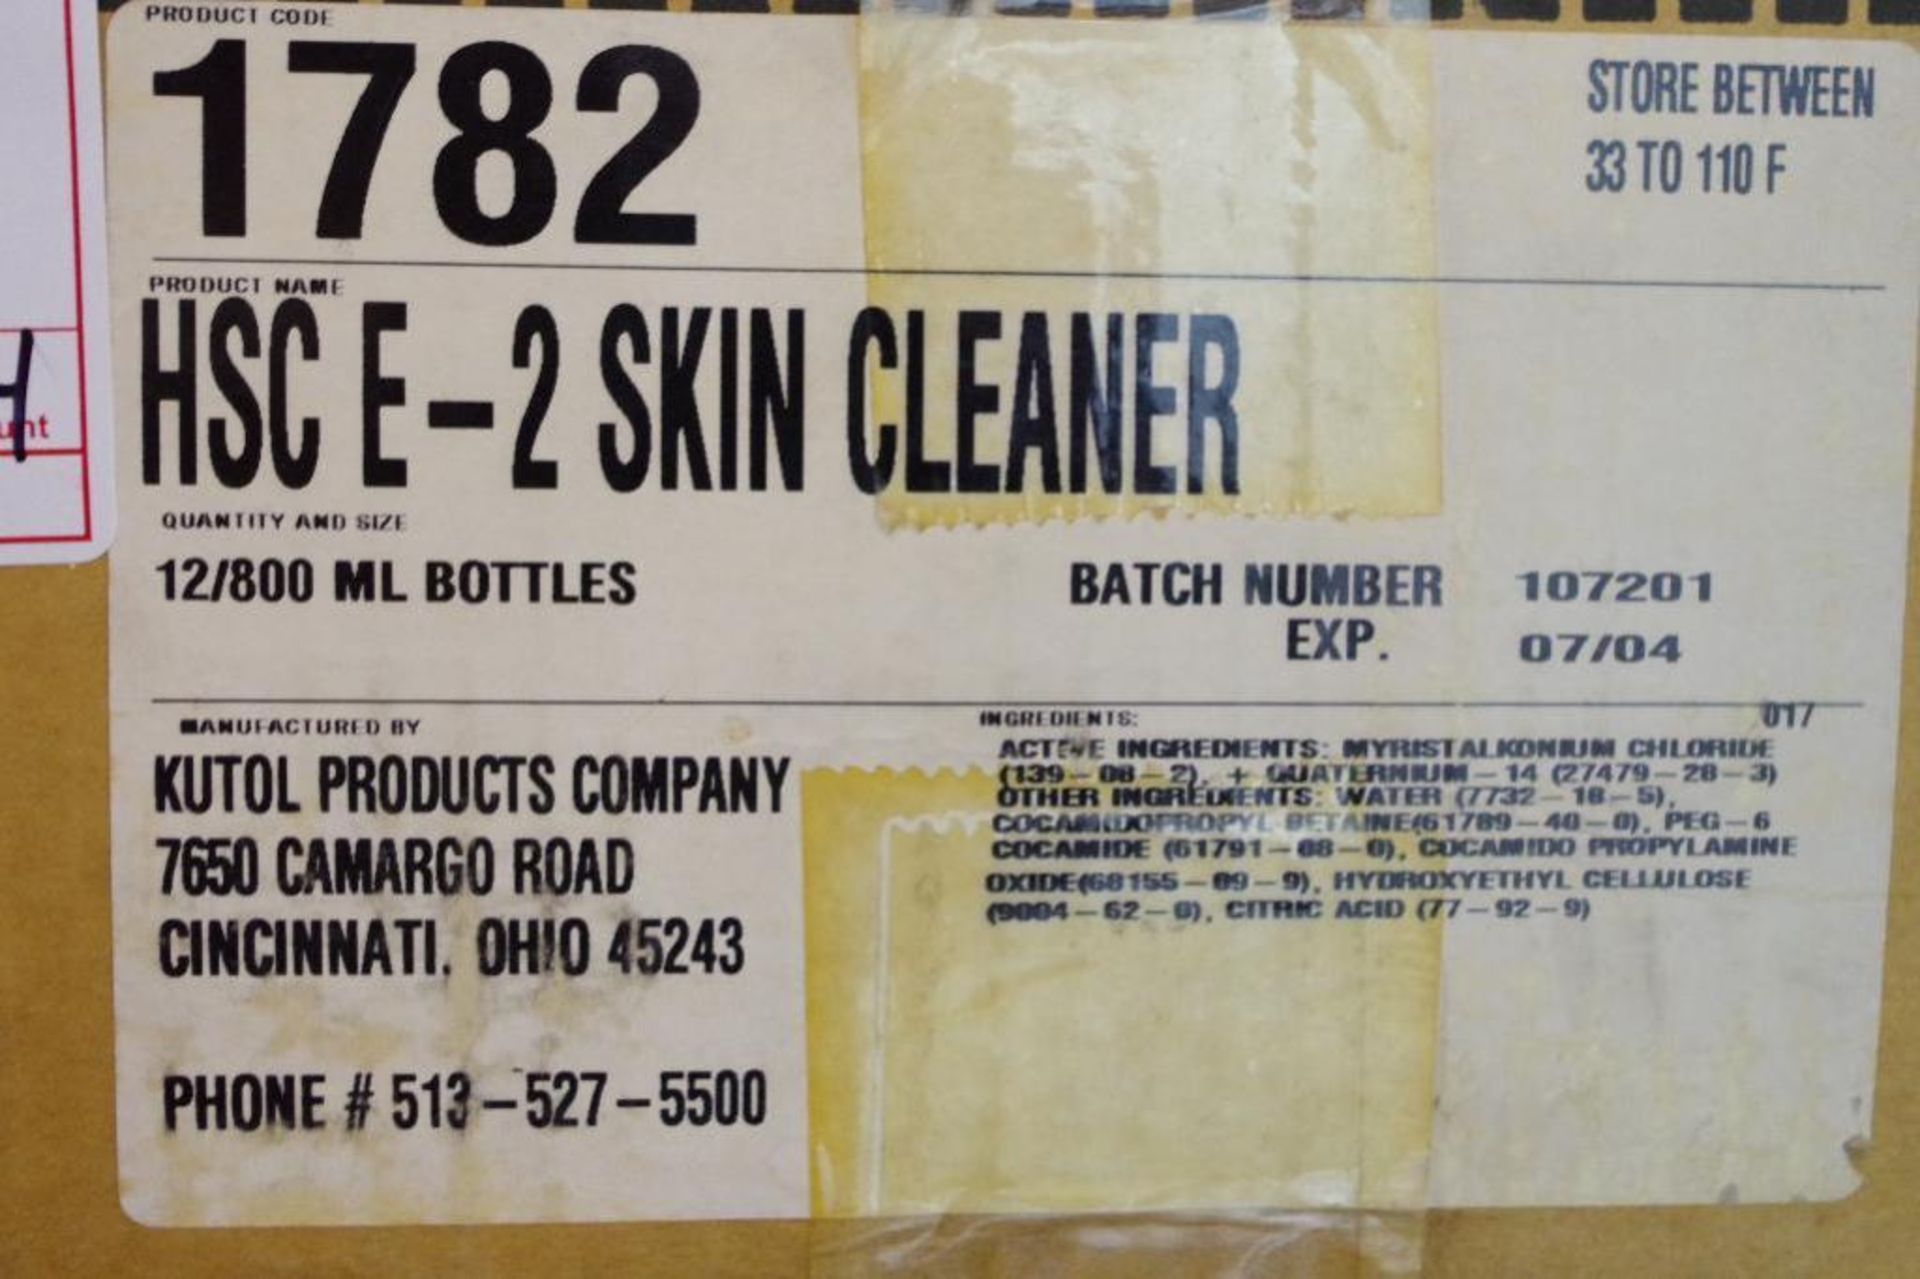 (2) Cases HSC E-2 Skin Cleanser Sanitizer 800 ml. Bottles (2 Cases of 12 Bottles) - Image 3 of 4